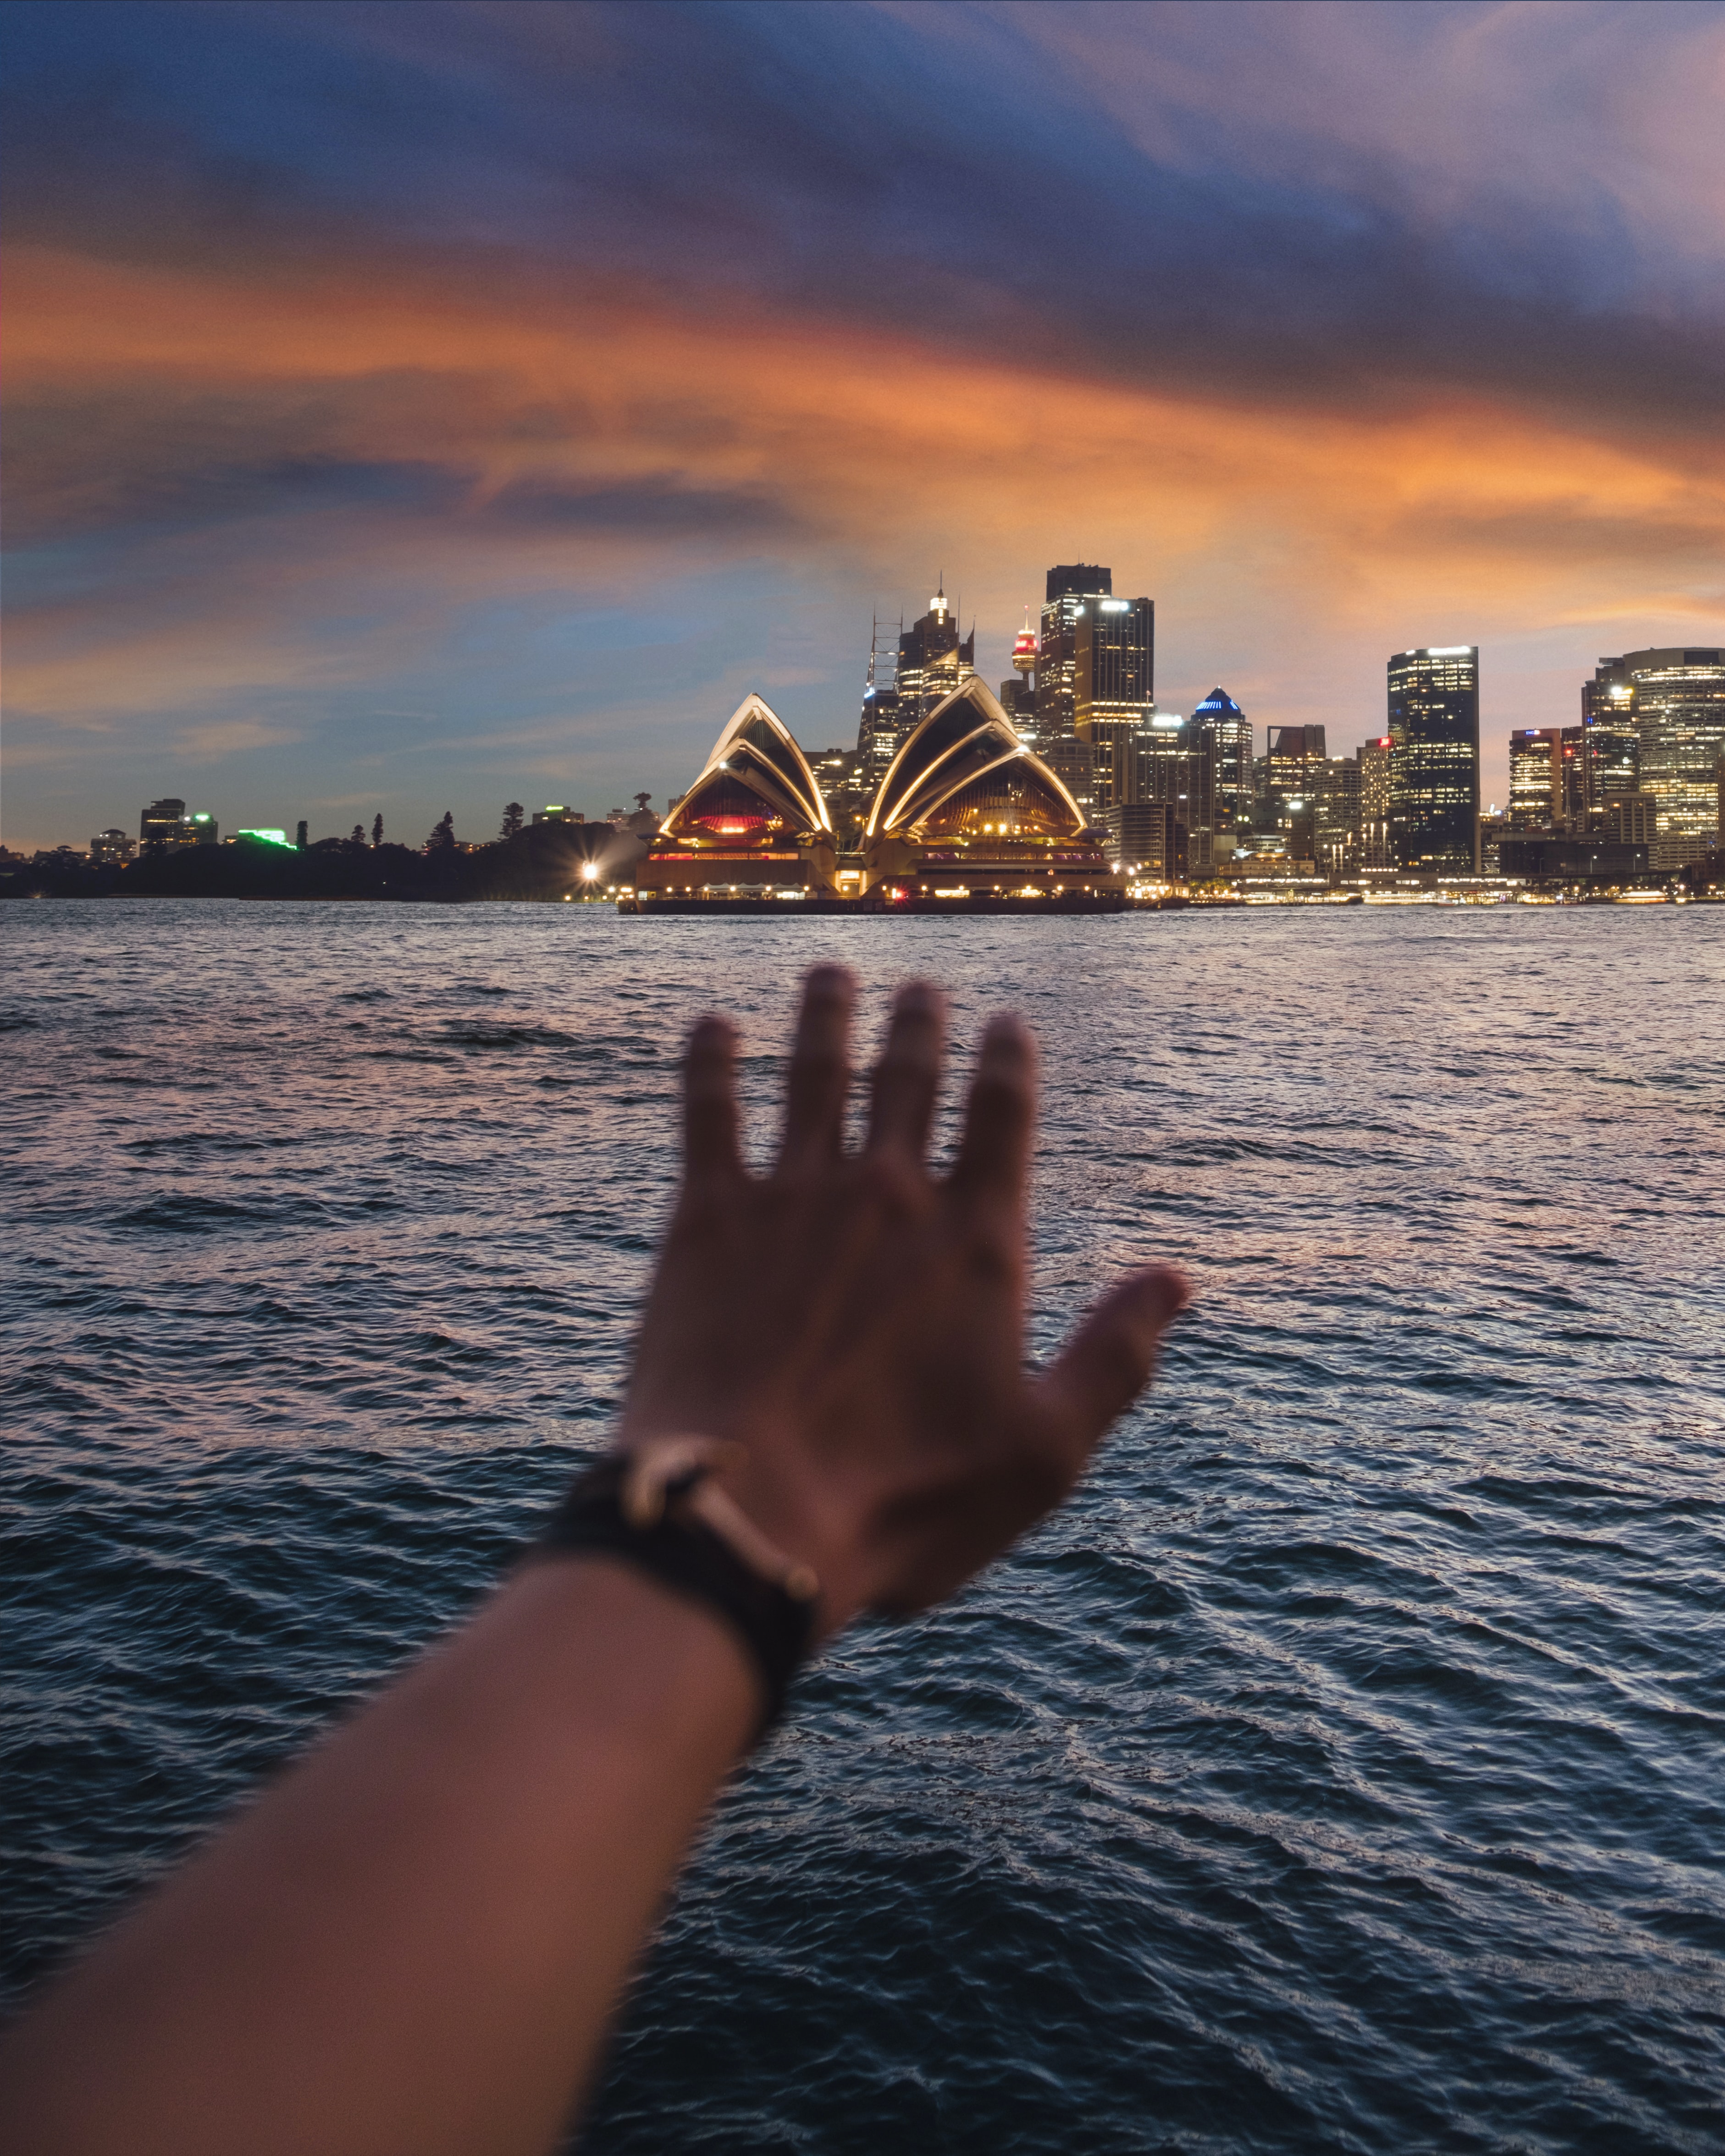 đầu tư định cư visa 188 Úc năm 2020 chậm trễ